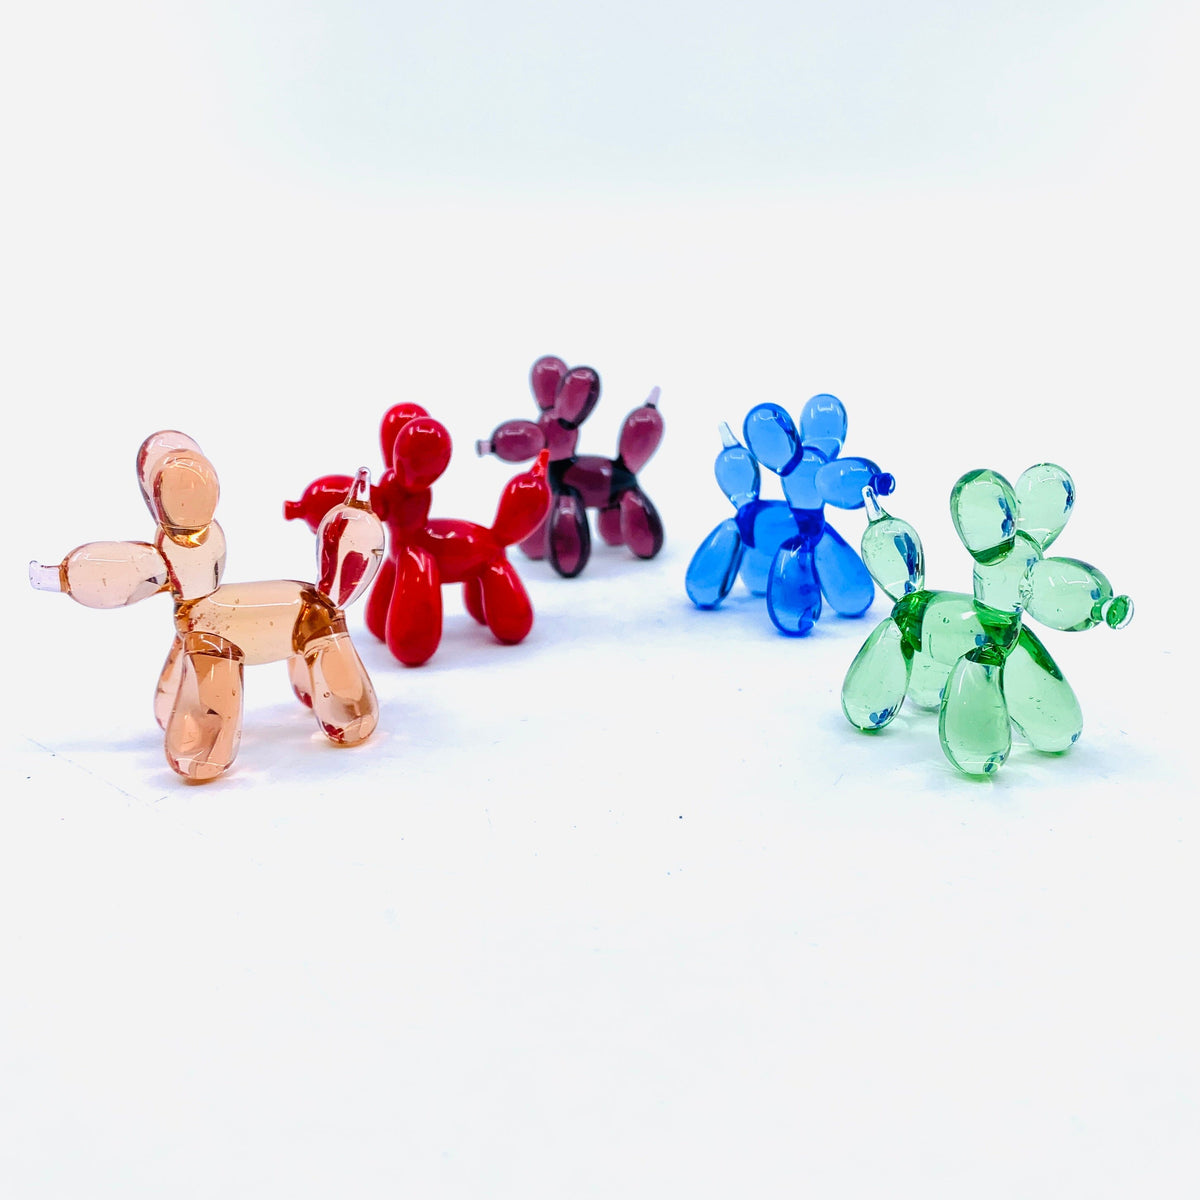 Balloon Dog Figurines Miniature - 